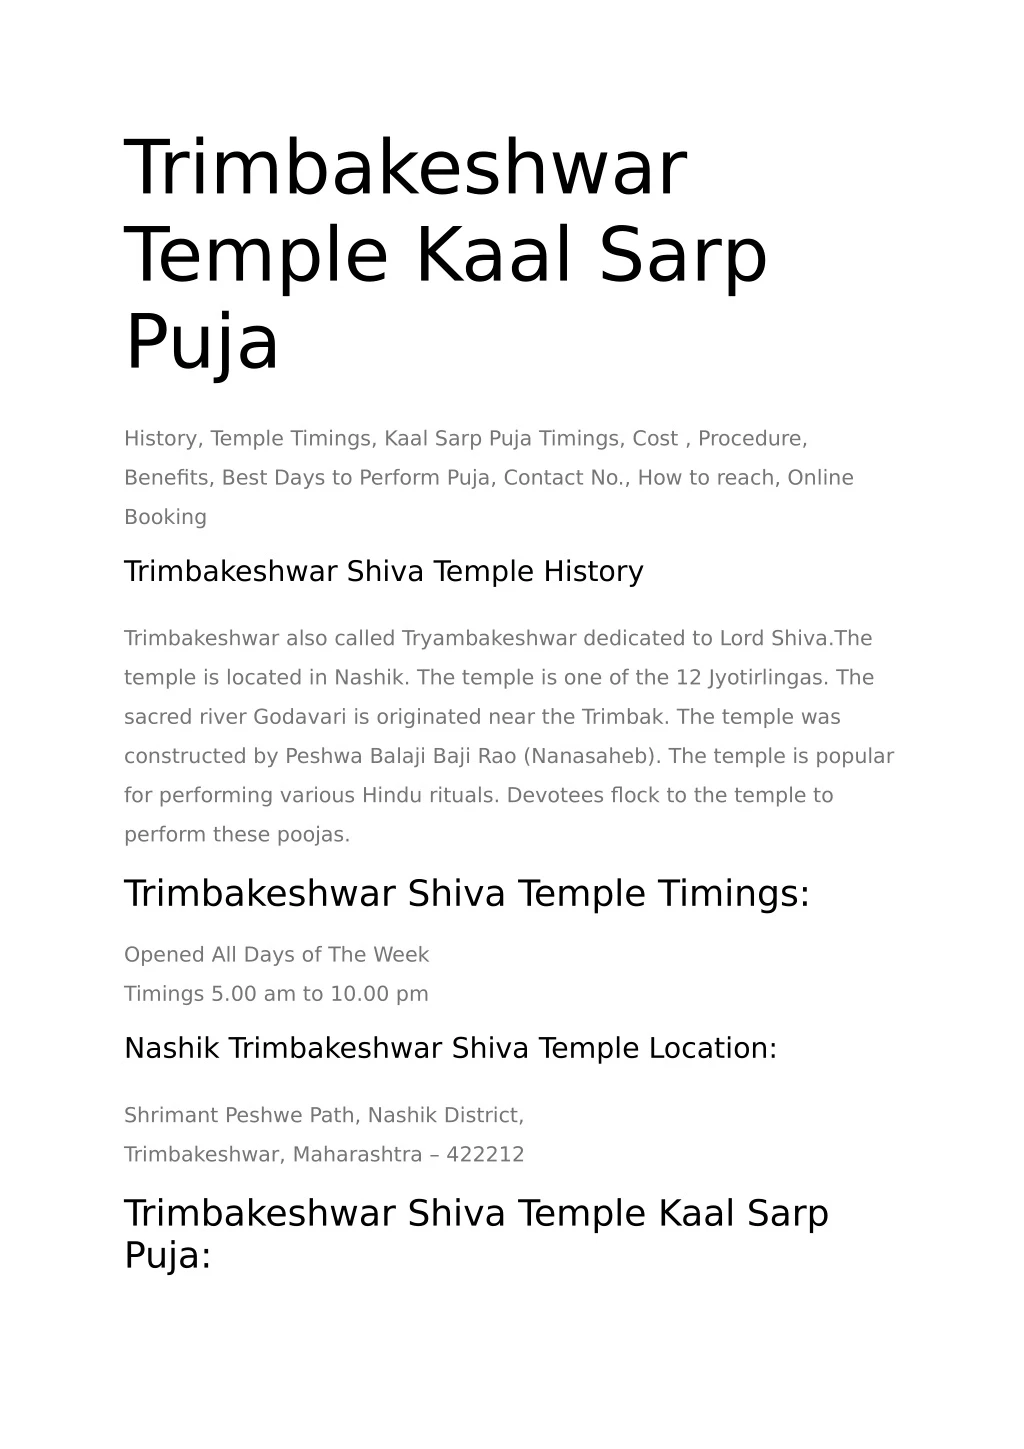 trimbakeshwar temple kaal sarp puja